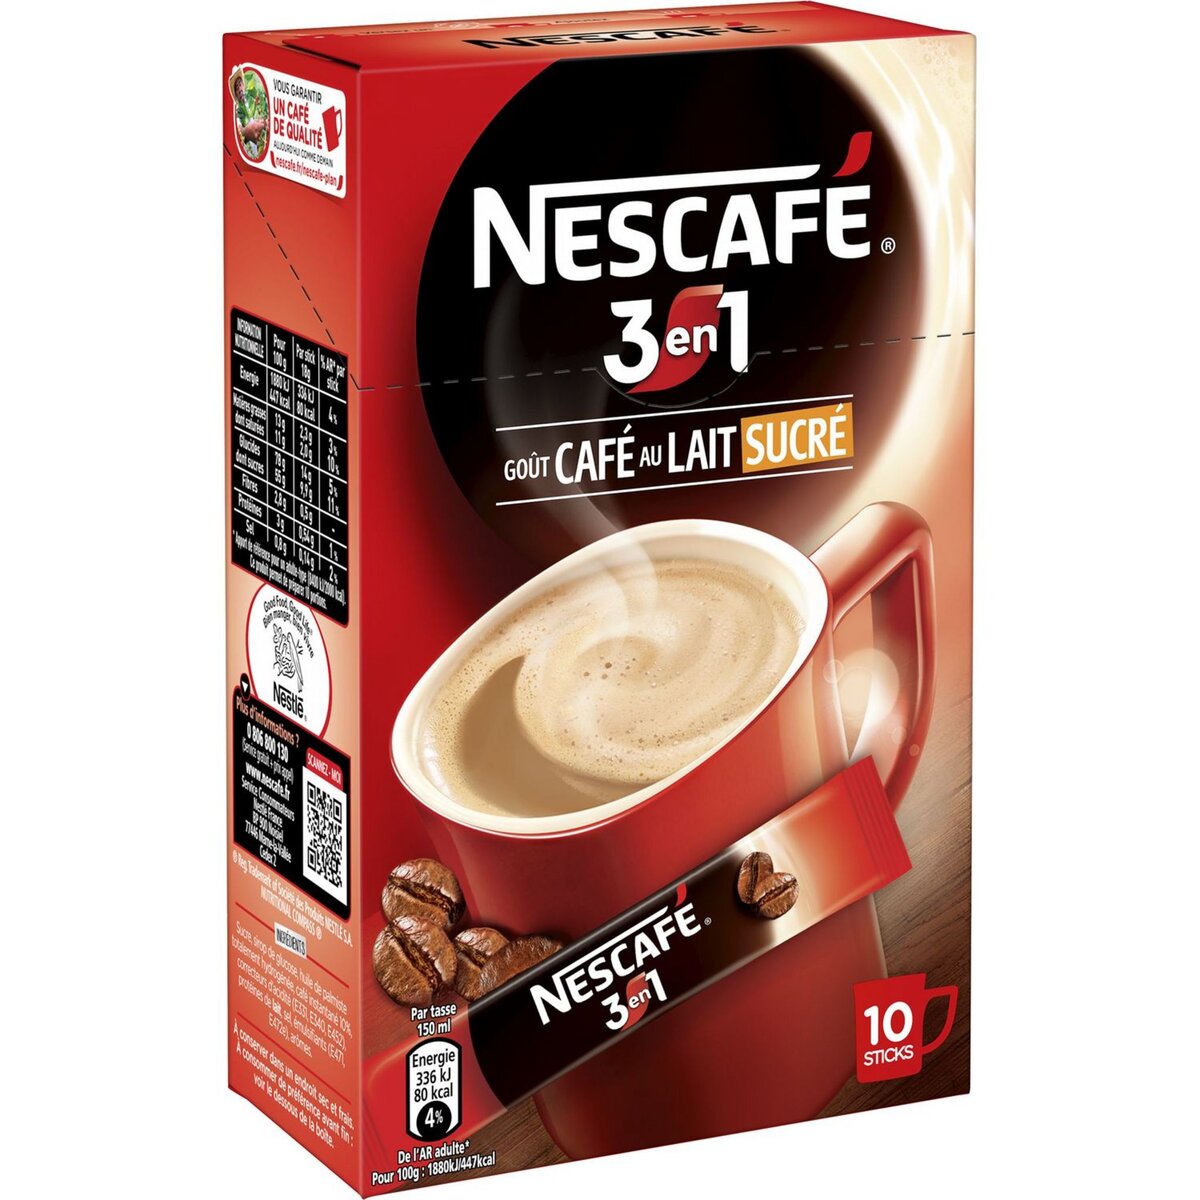 NESCAFE Café soluble en stick 3en1 goût café au lait sucré 10 sticks 18g  pas cher 